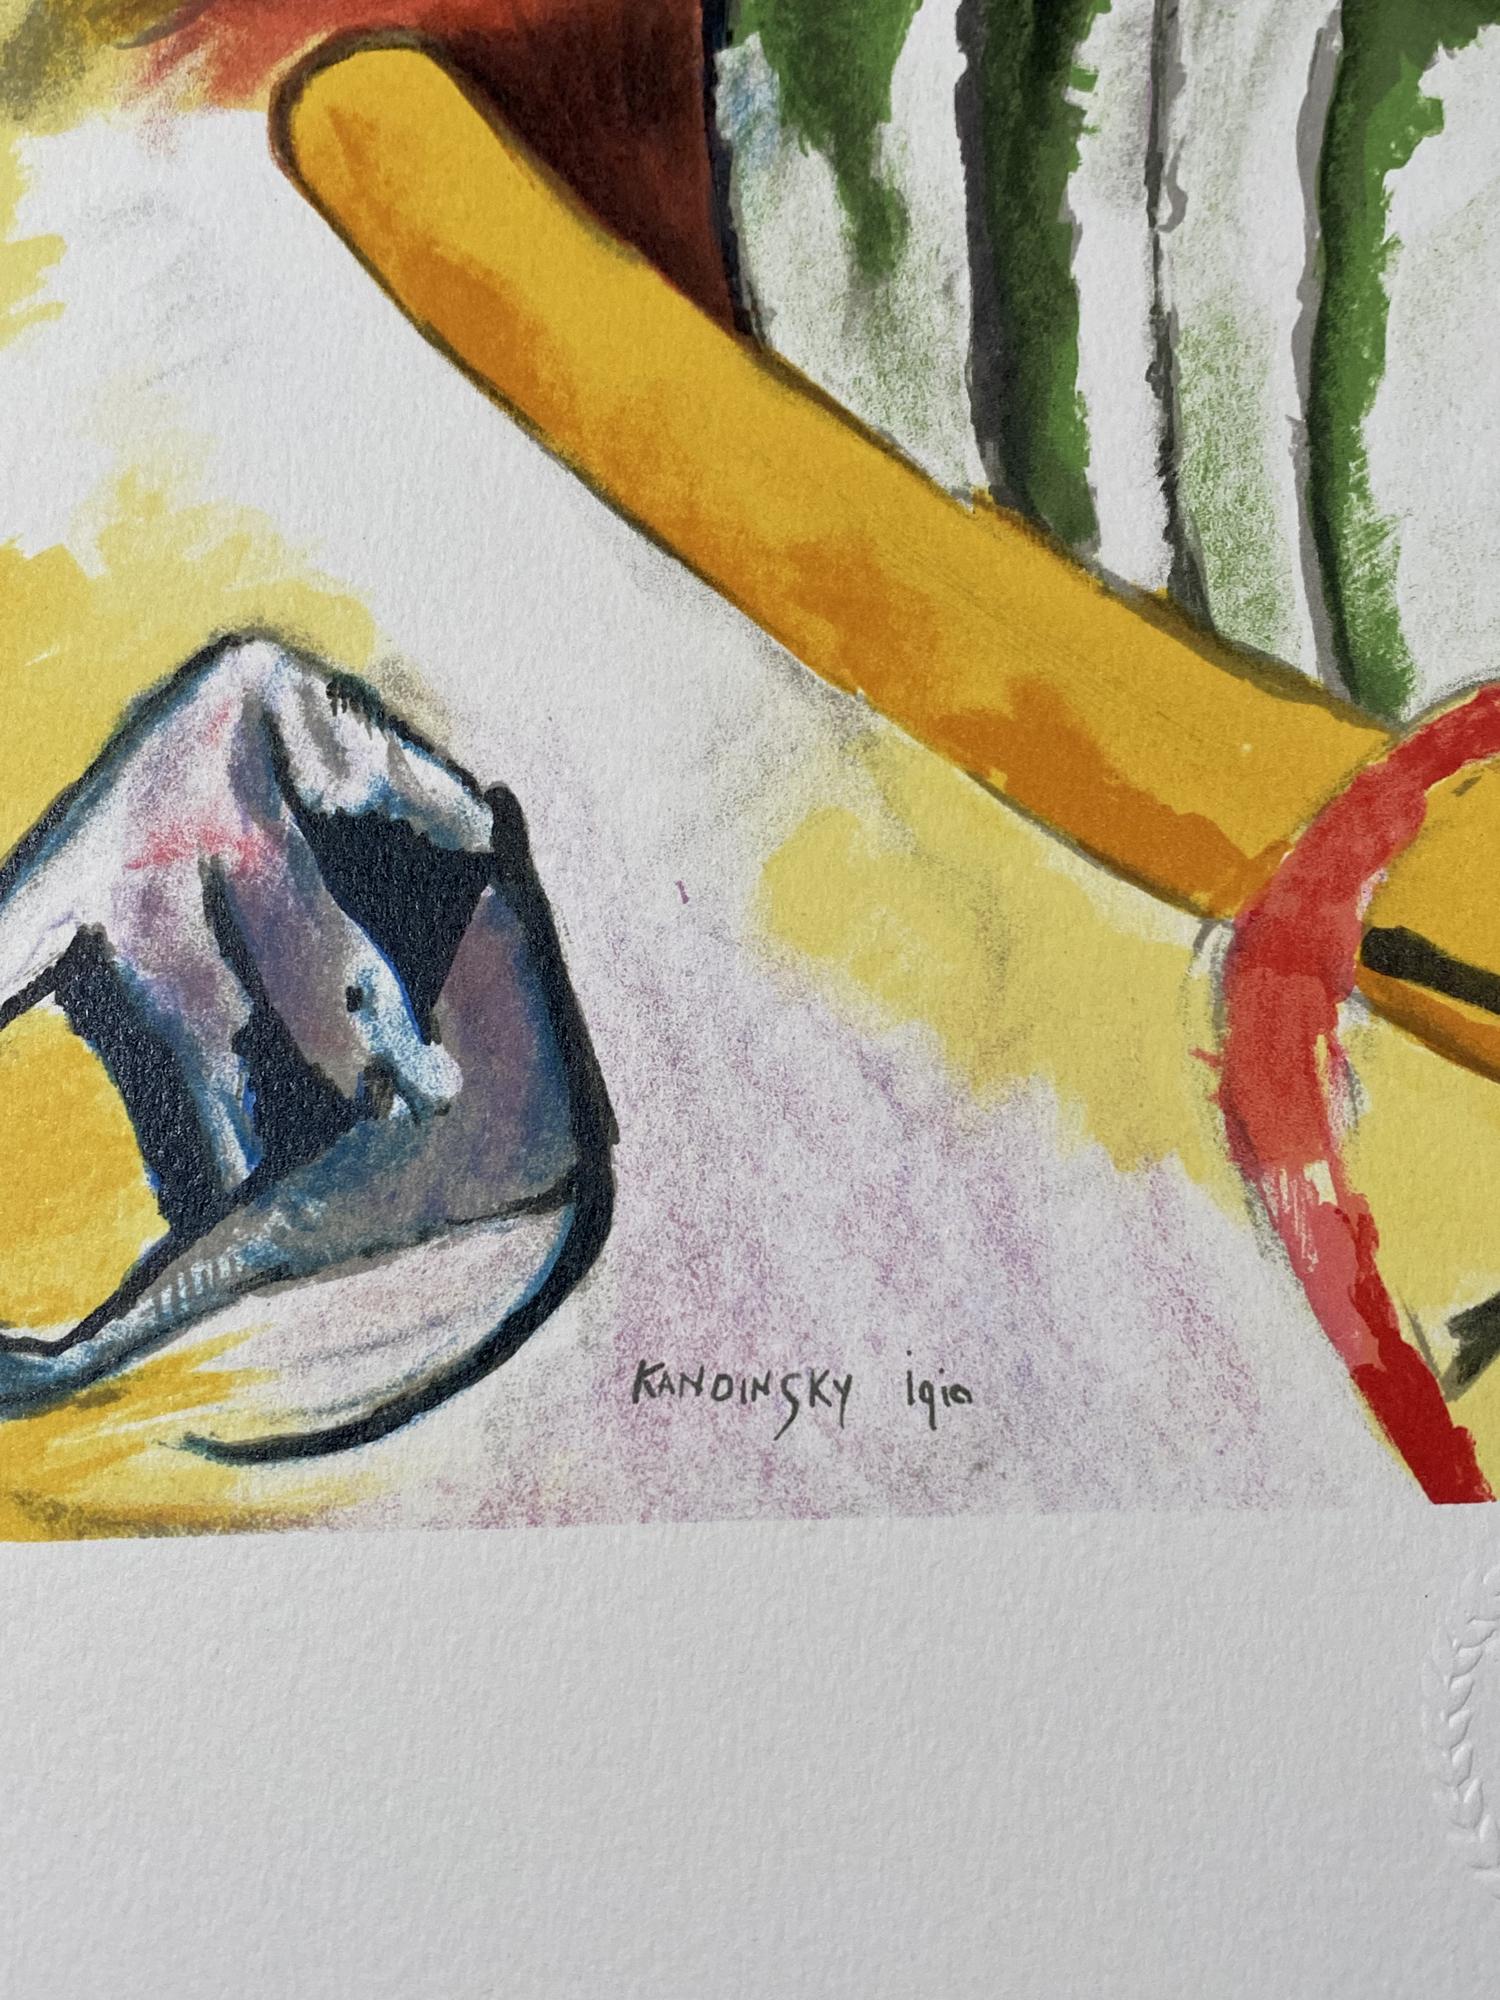 Wassily Kandinsky - Improvisation 11
1910
Farblithographie auf Arches-Papier,
1990
Papierformat 24